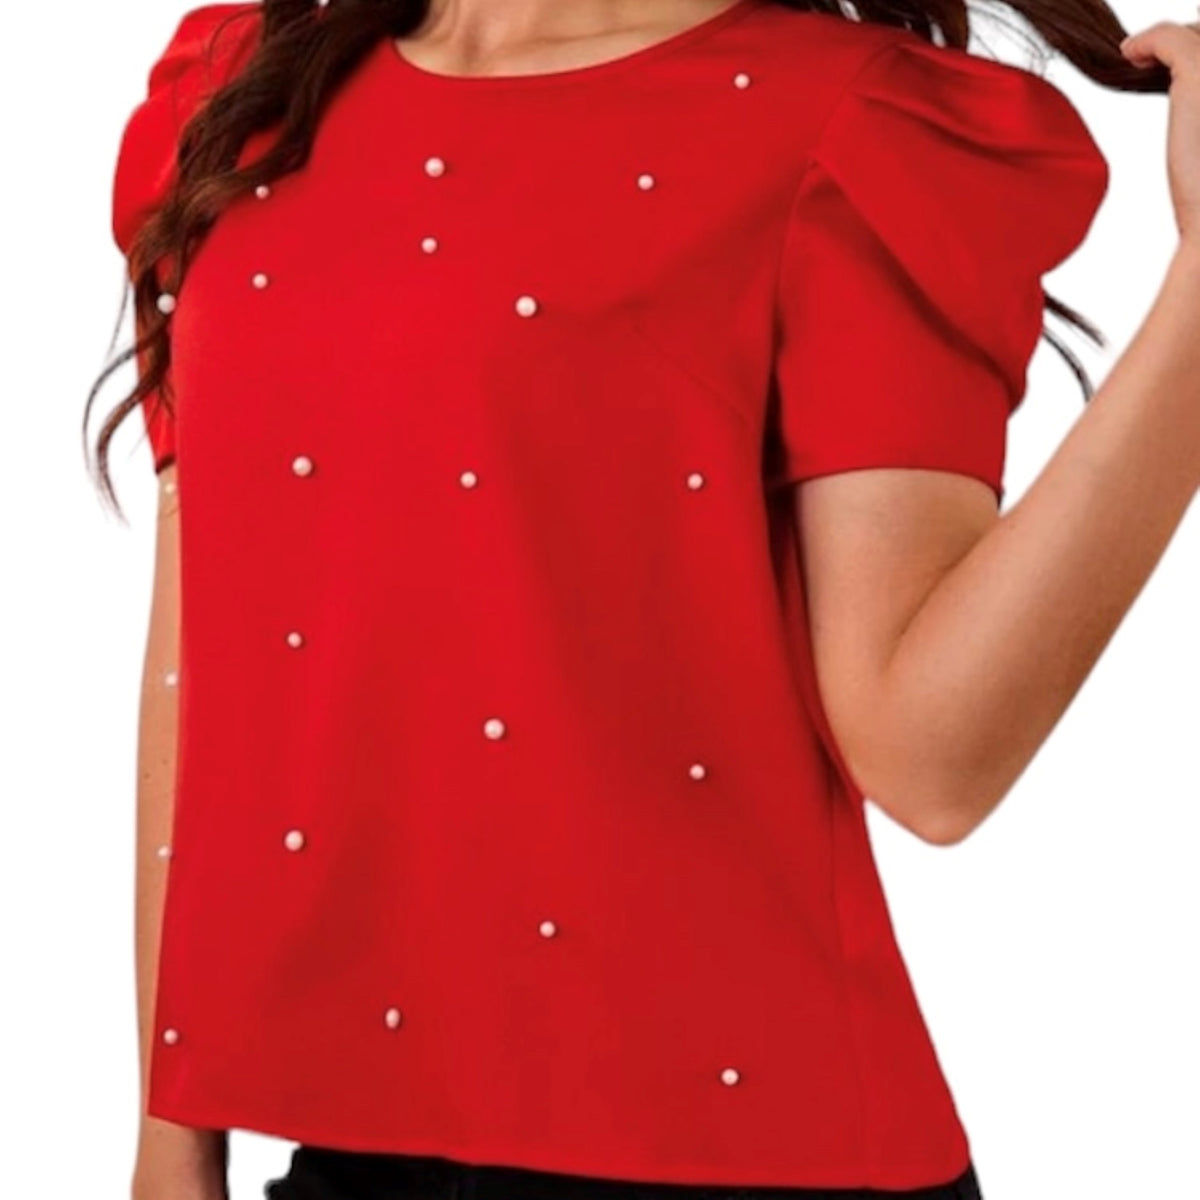 Une pièce chic et originale parsemé de perle blanche , cette blouse manche bouffante rouge est parfaite pour un look tendance. Une pièce élégante et intemporelle pour compléter n'importe quelle tenue.